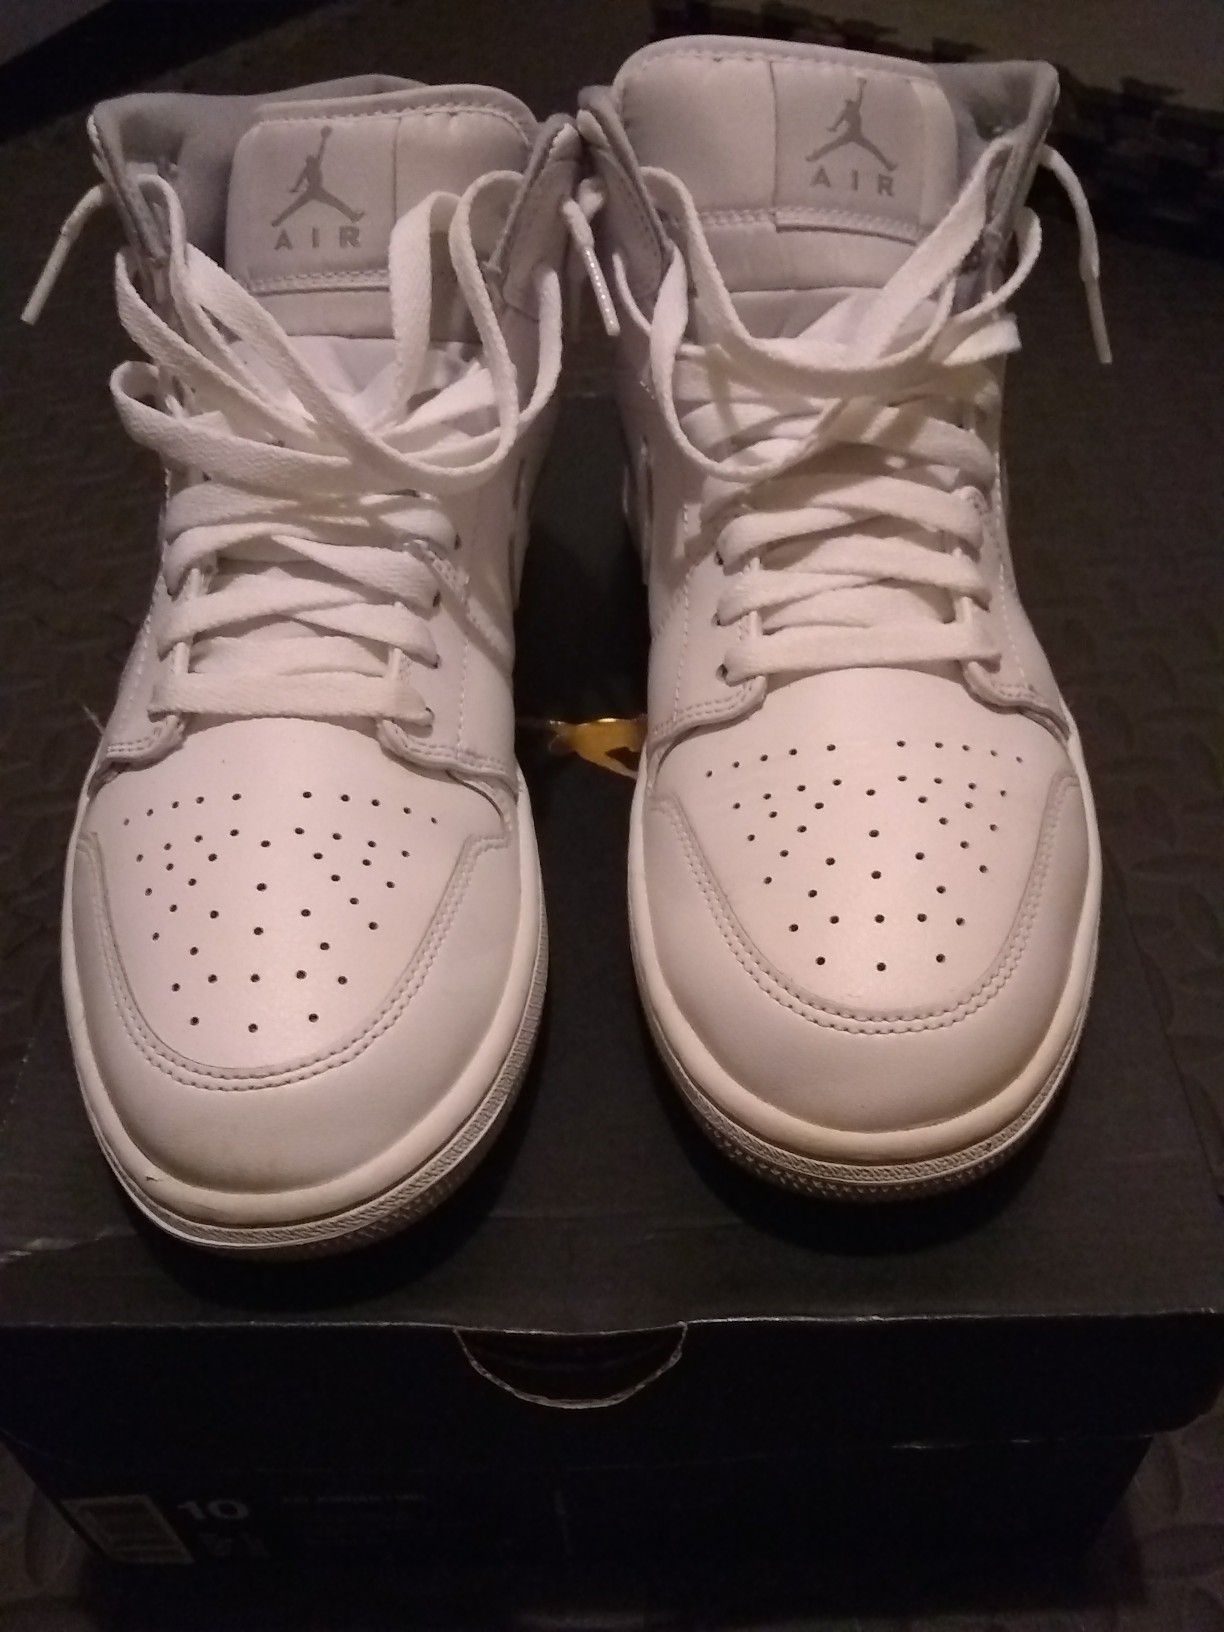 White Jordan 1's (size 10 w/ box)